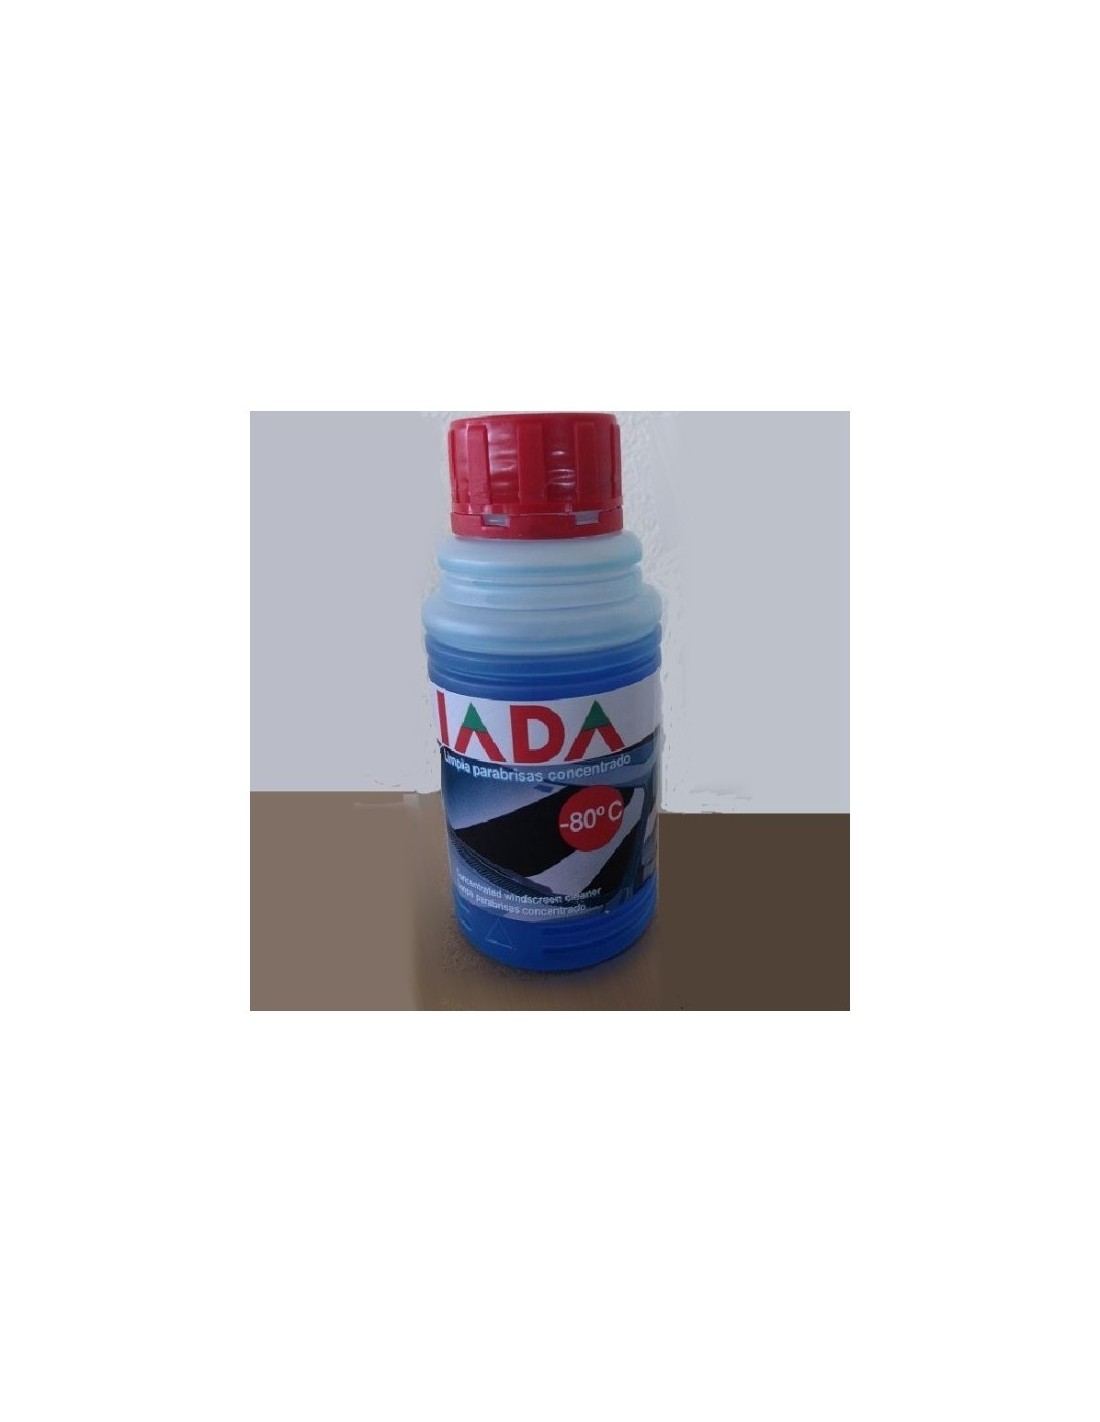 Limpiaparabrisas Concentrado IADA, 250 ml - 2,90 € - www.recambium